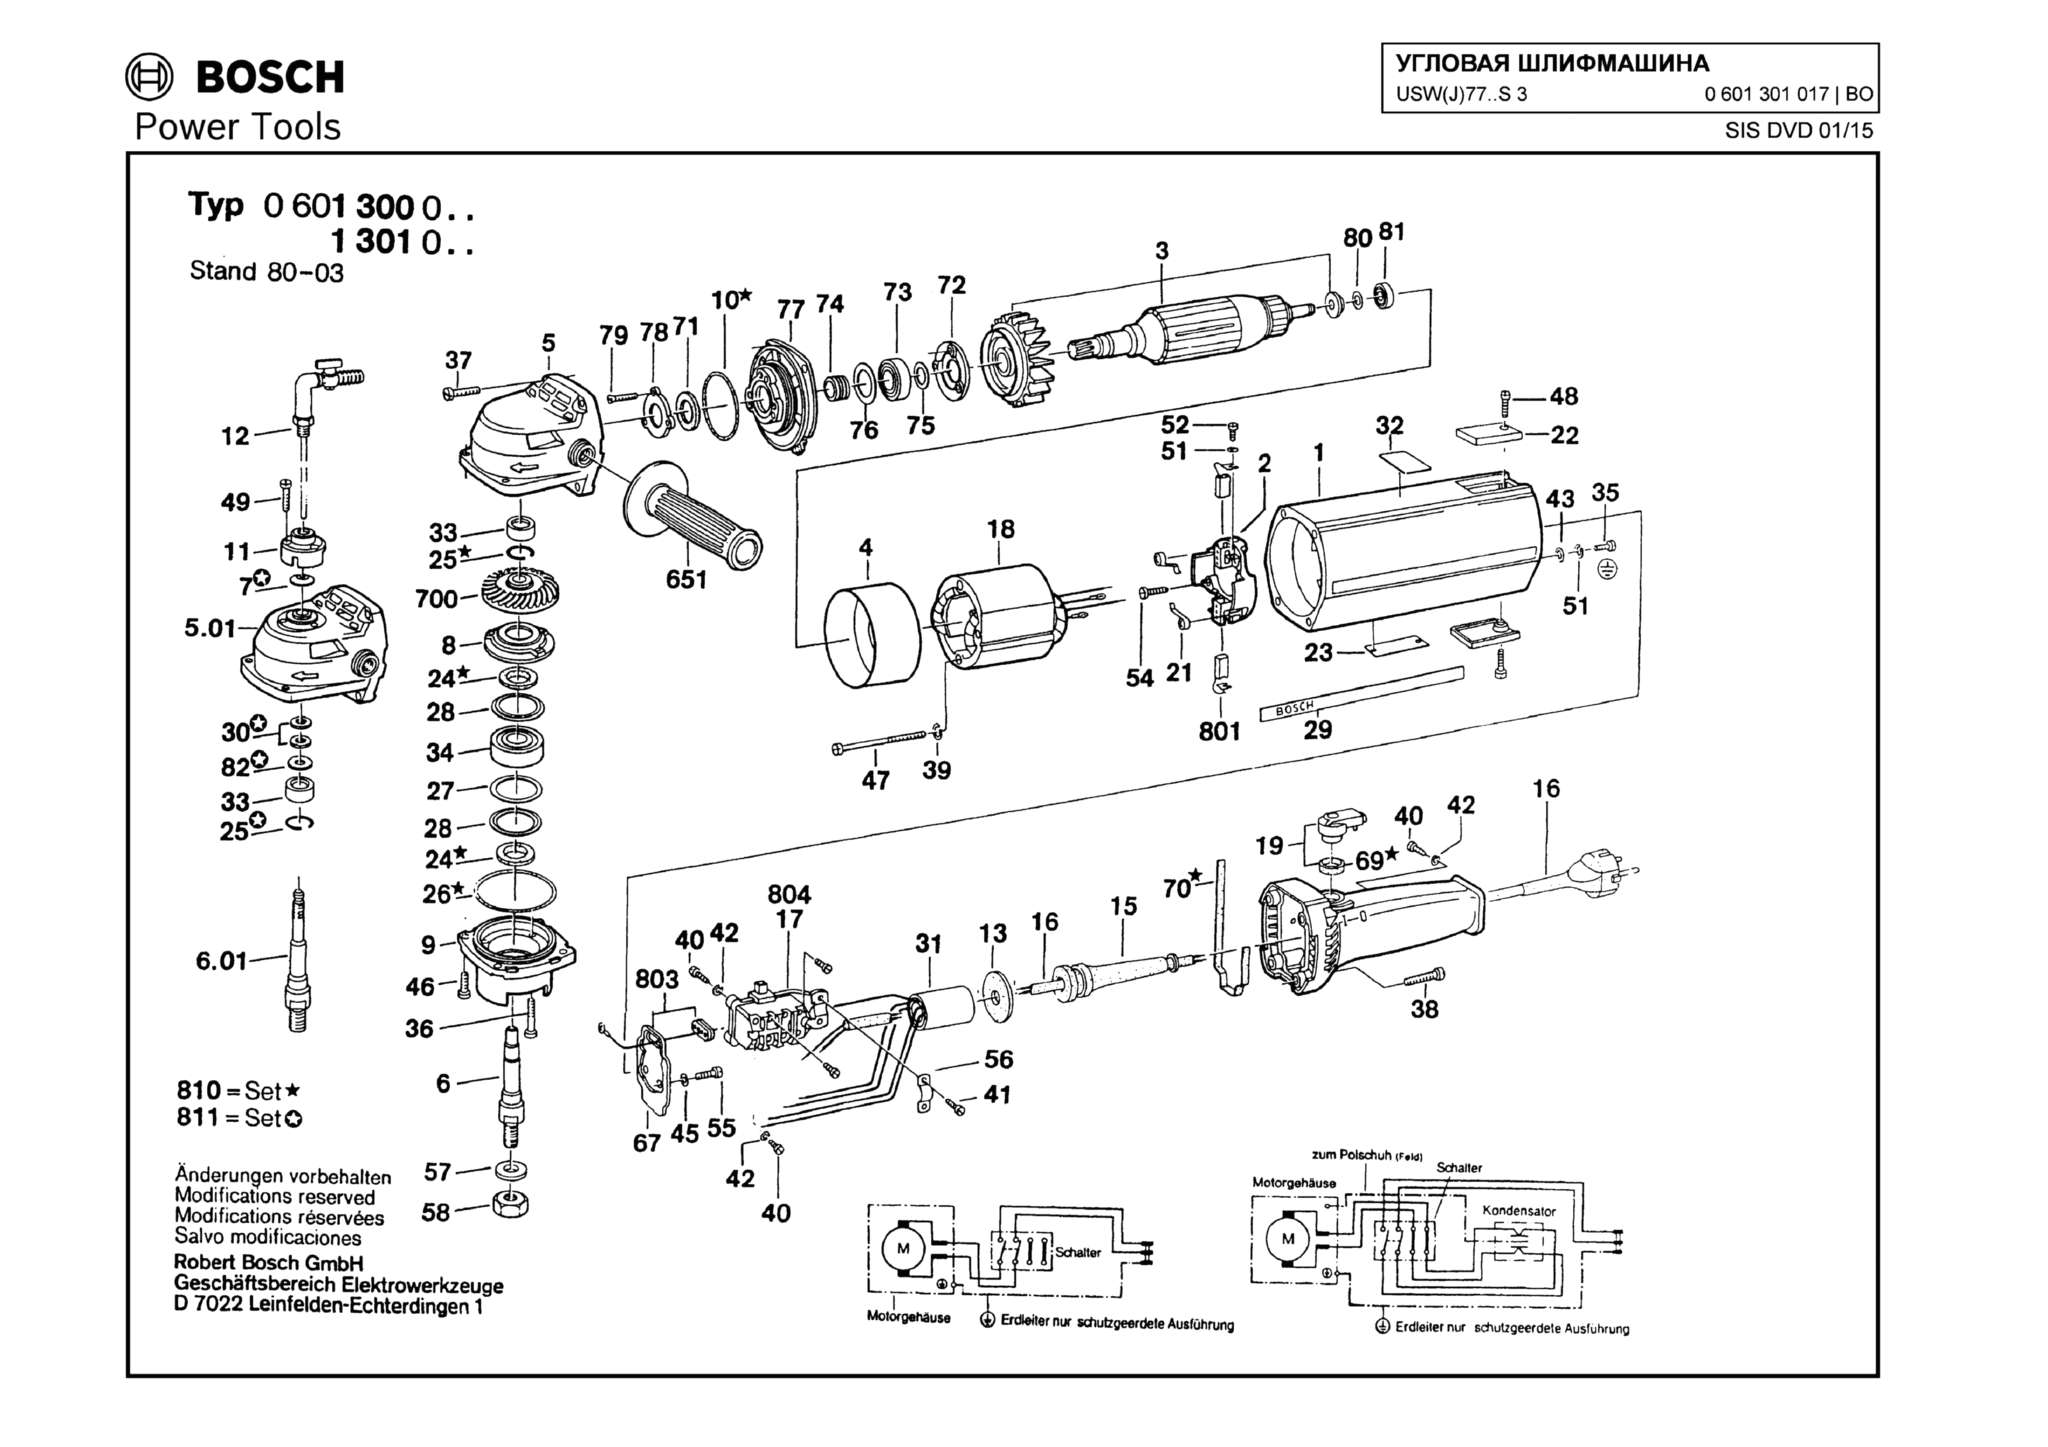 Запчасти, схема и деталировка Bosch USW(J)77..S 3 (ТИП 0601301017)